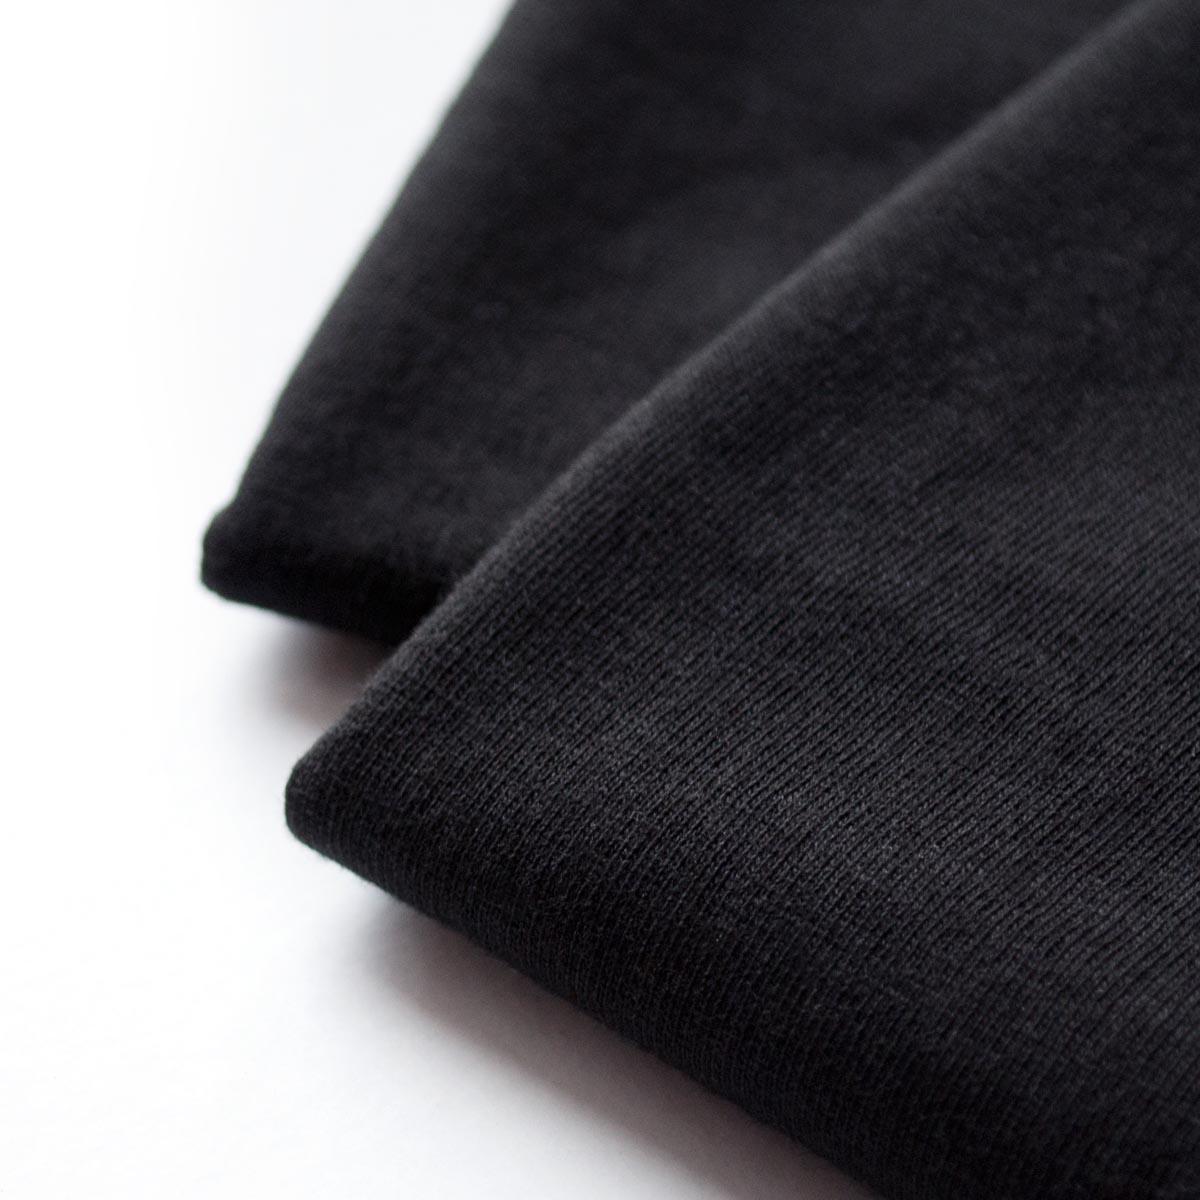 Detaliu textura material, tricouri cuplu negre